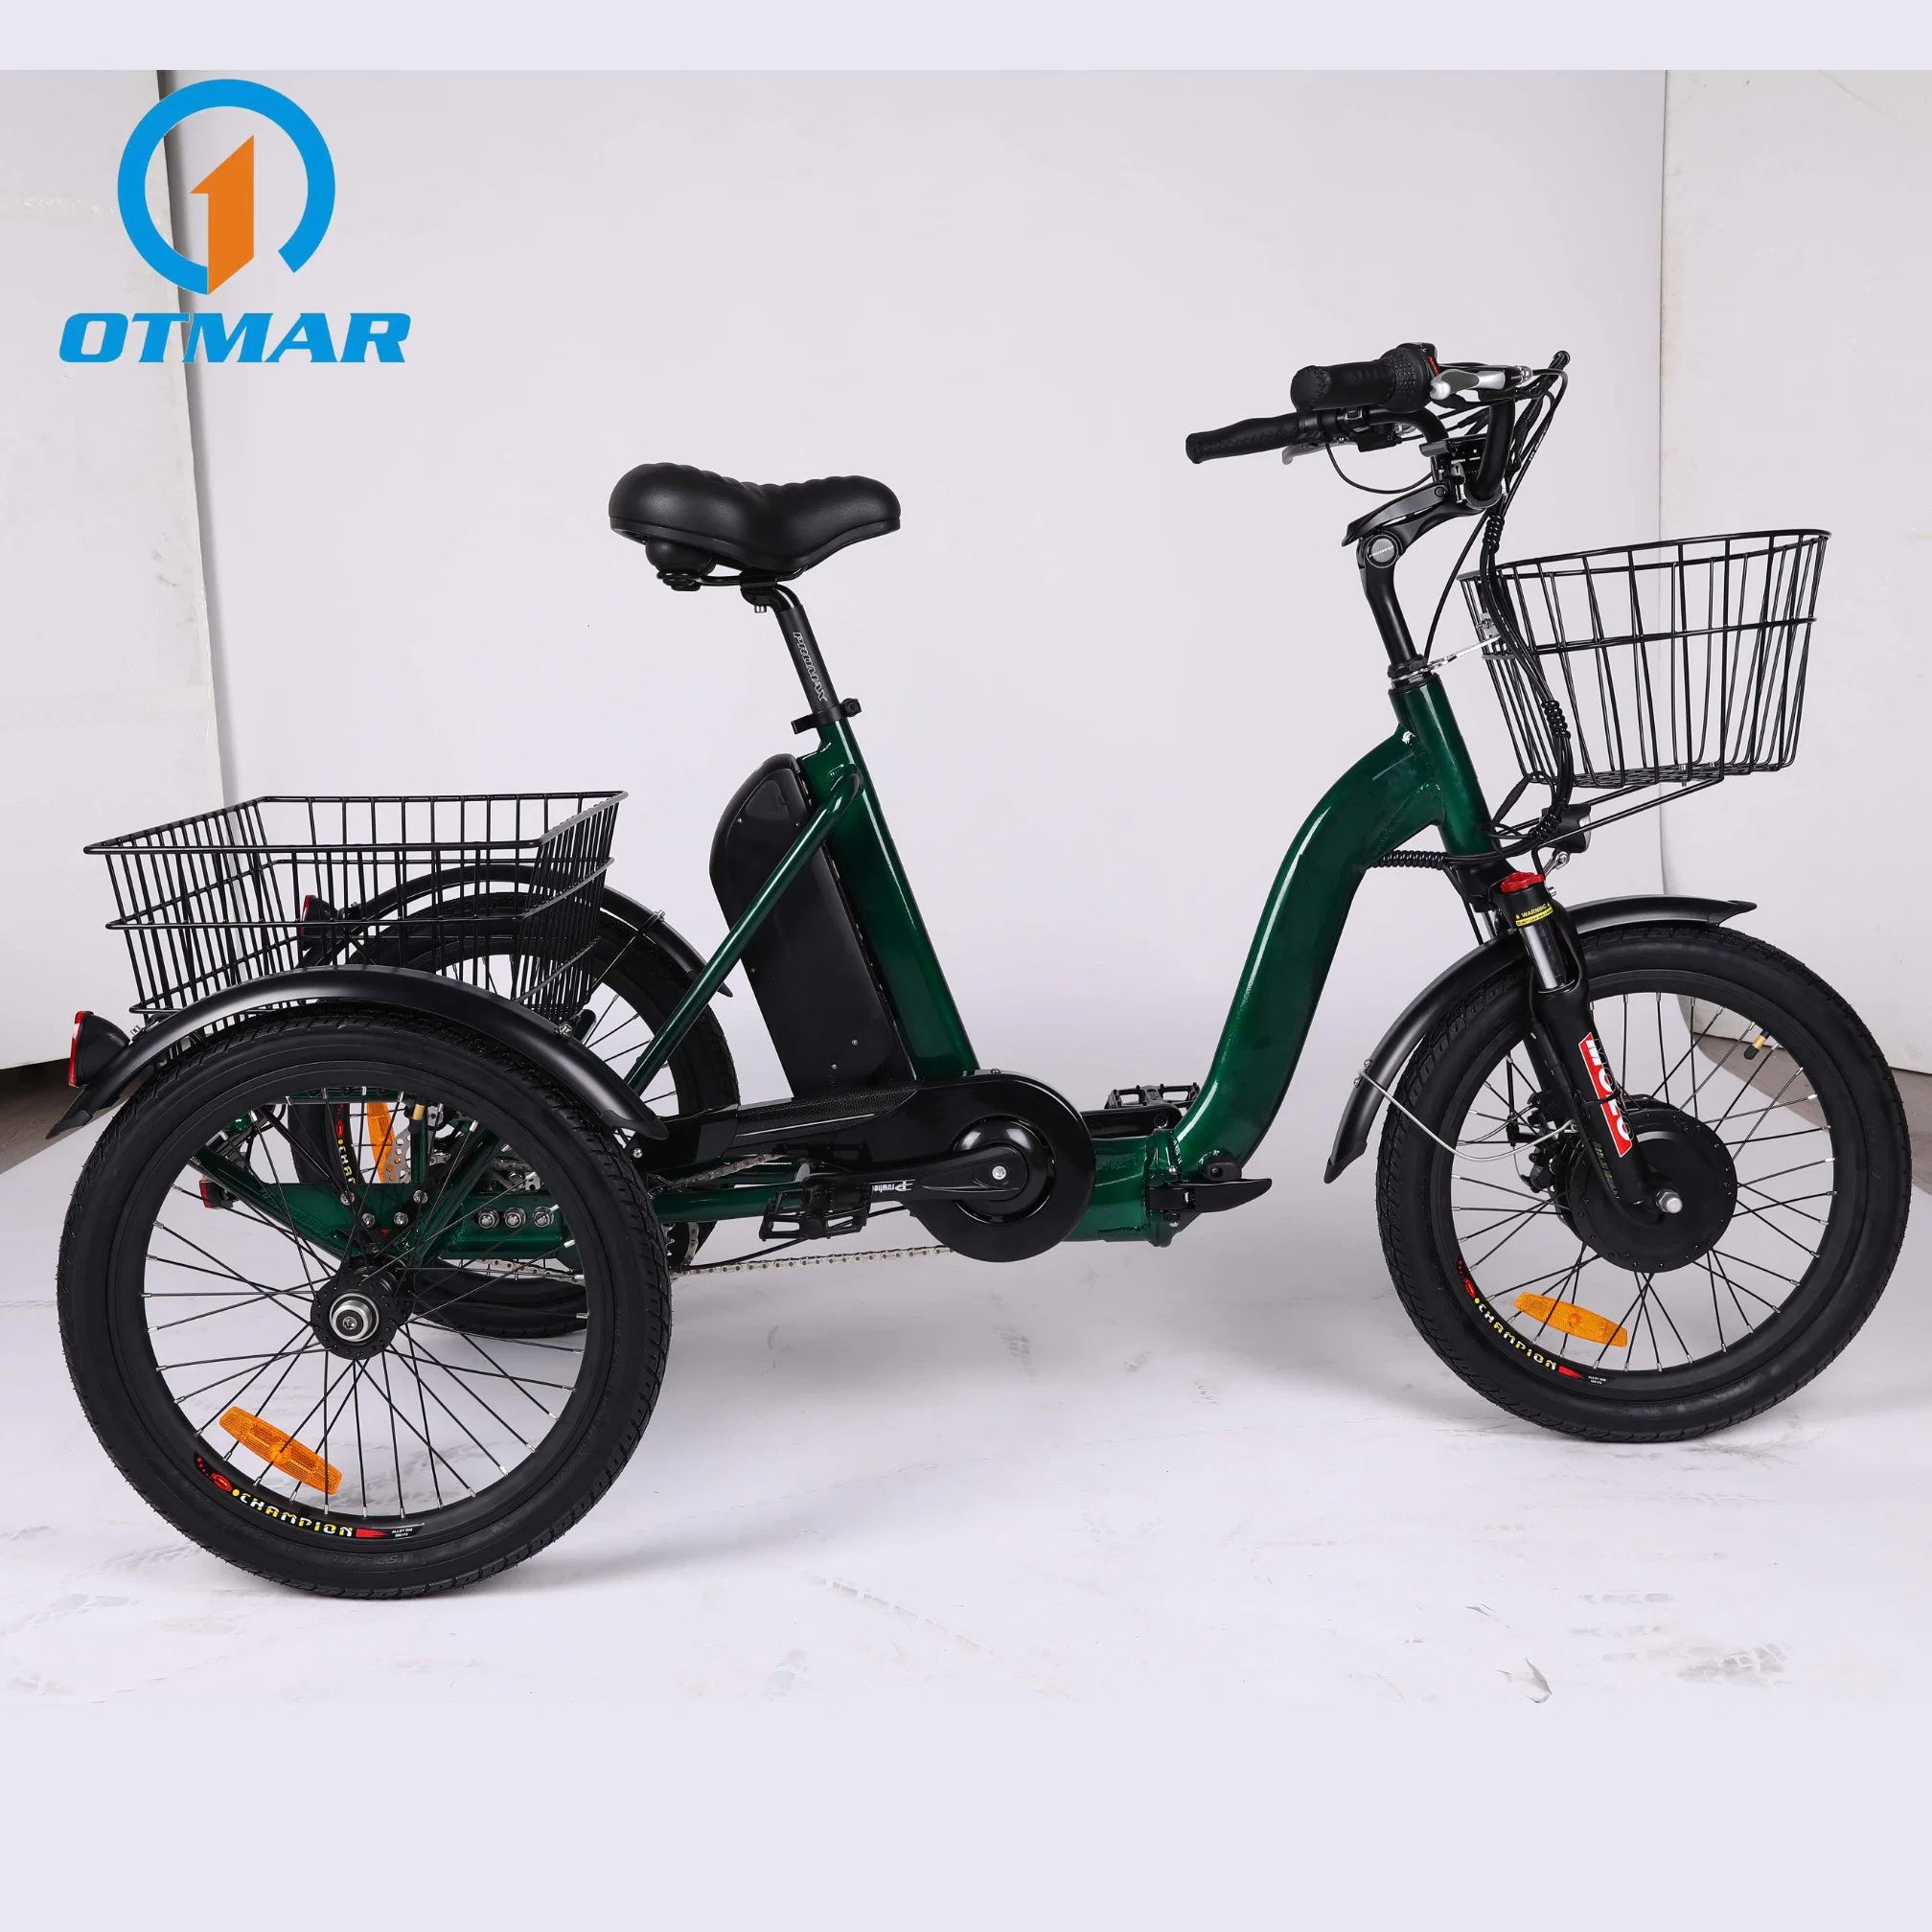 الصين OEM 20بوصة دفع أمامي الدراجة الكهربائية ثلاثية العجلات ميني الإطار ثلاثة عجلة المدينة الكهربائية القابلة للطي بقدرة 250 واط، أي الشحن E، قابلة للطي